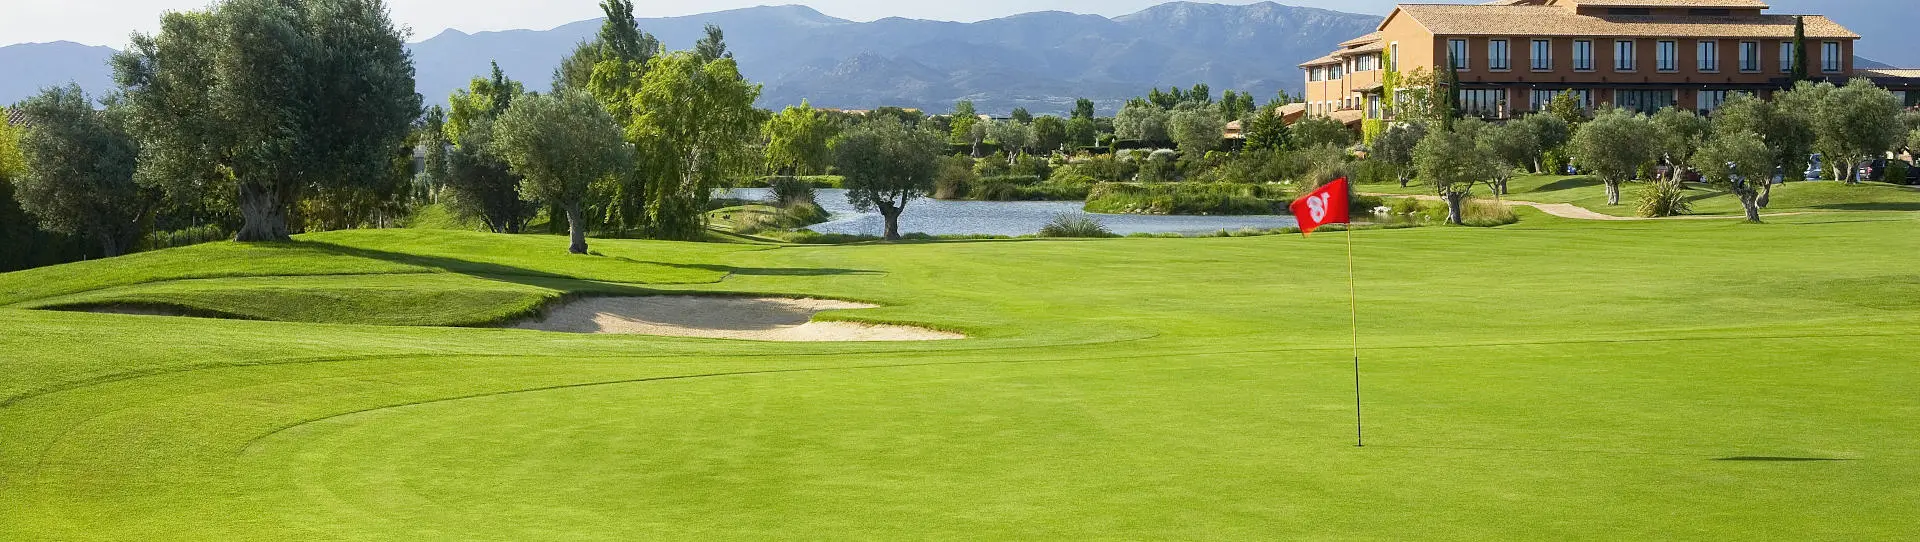 Spain golf courses - Peralada Golf Course - Photo 1